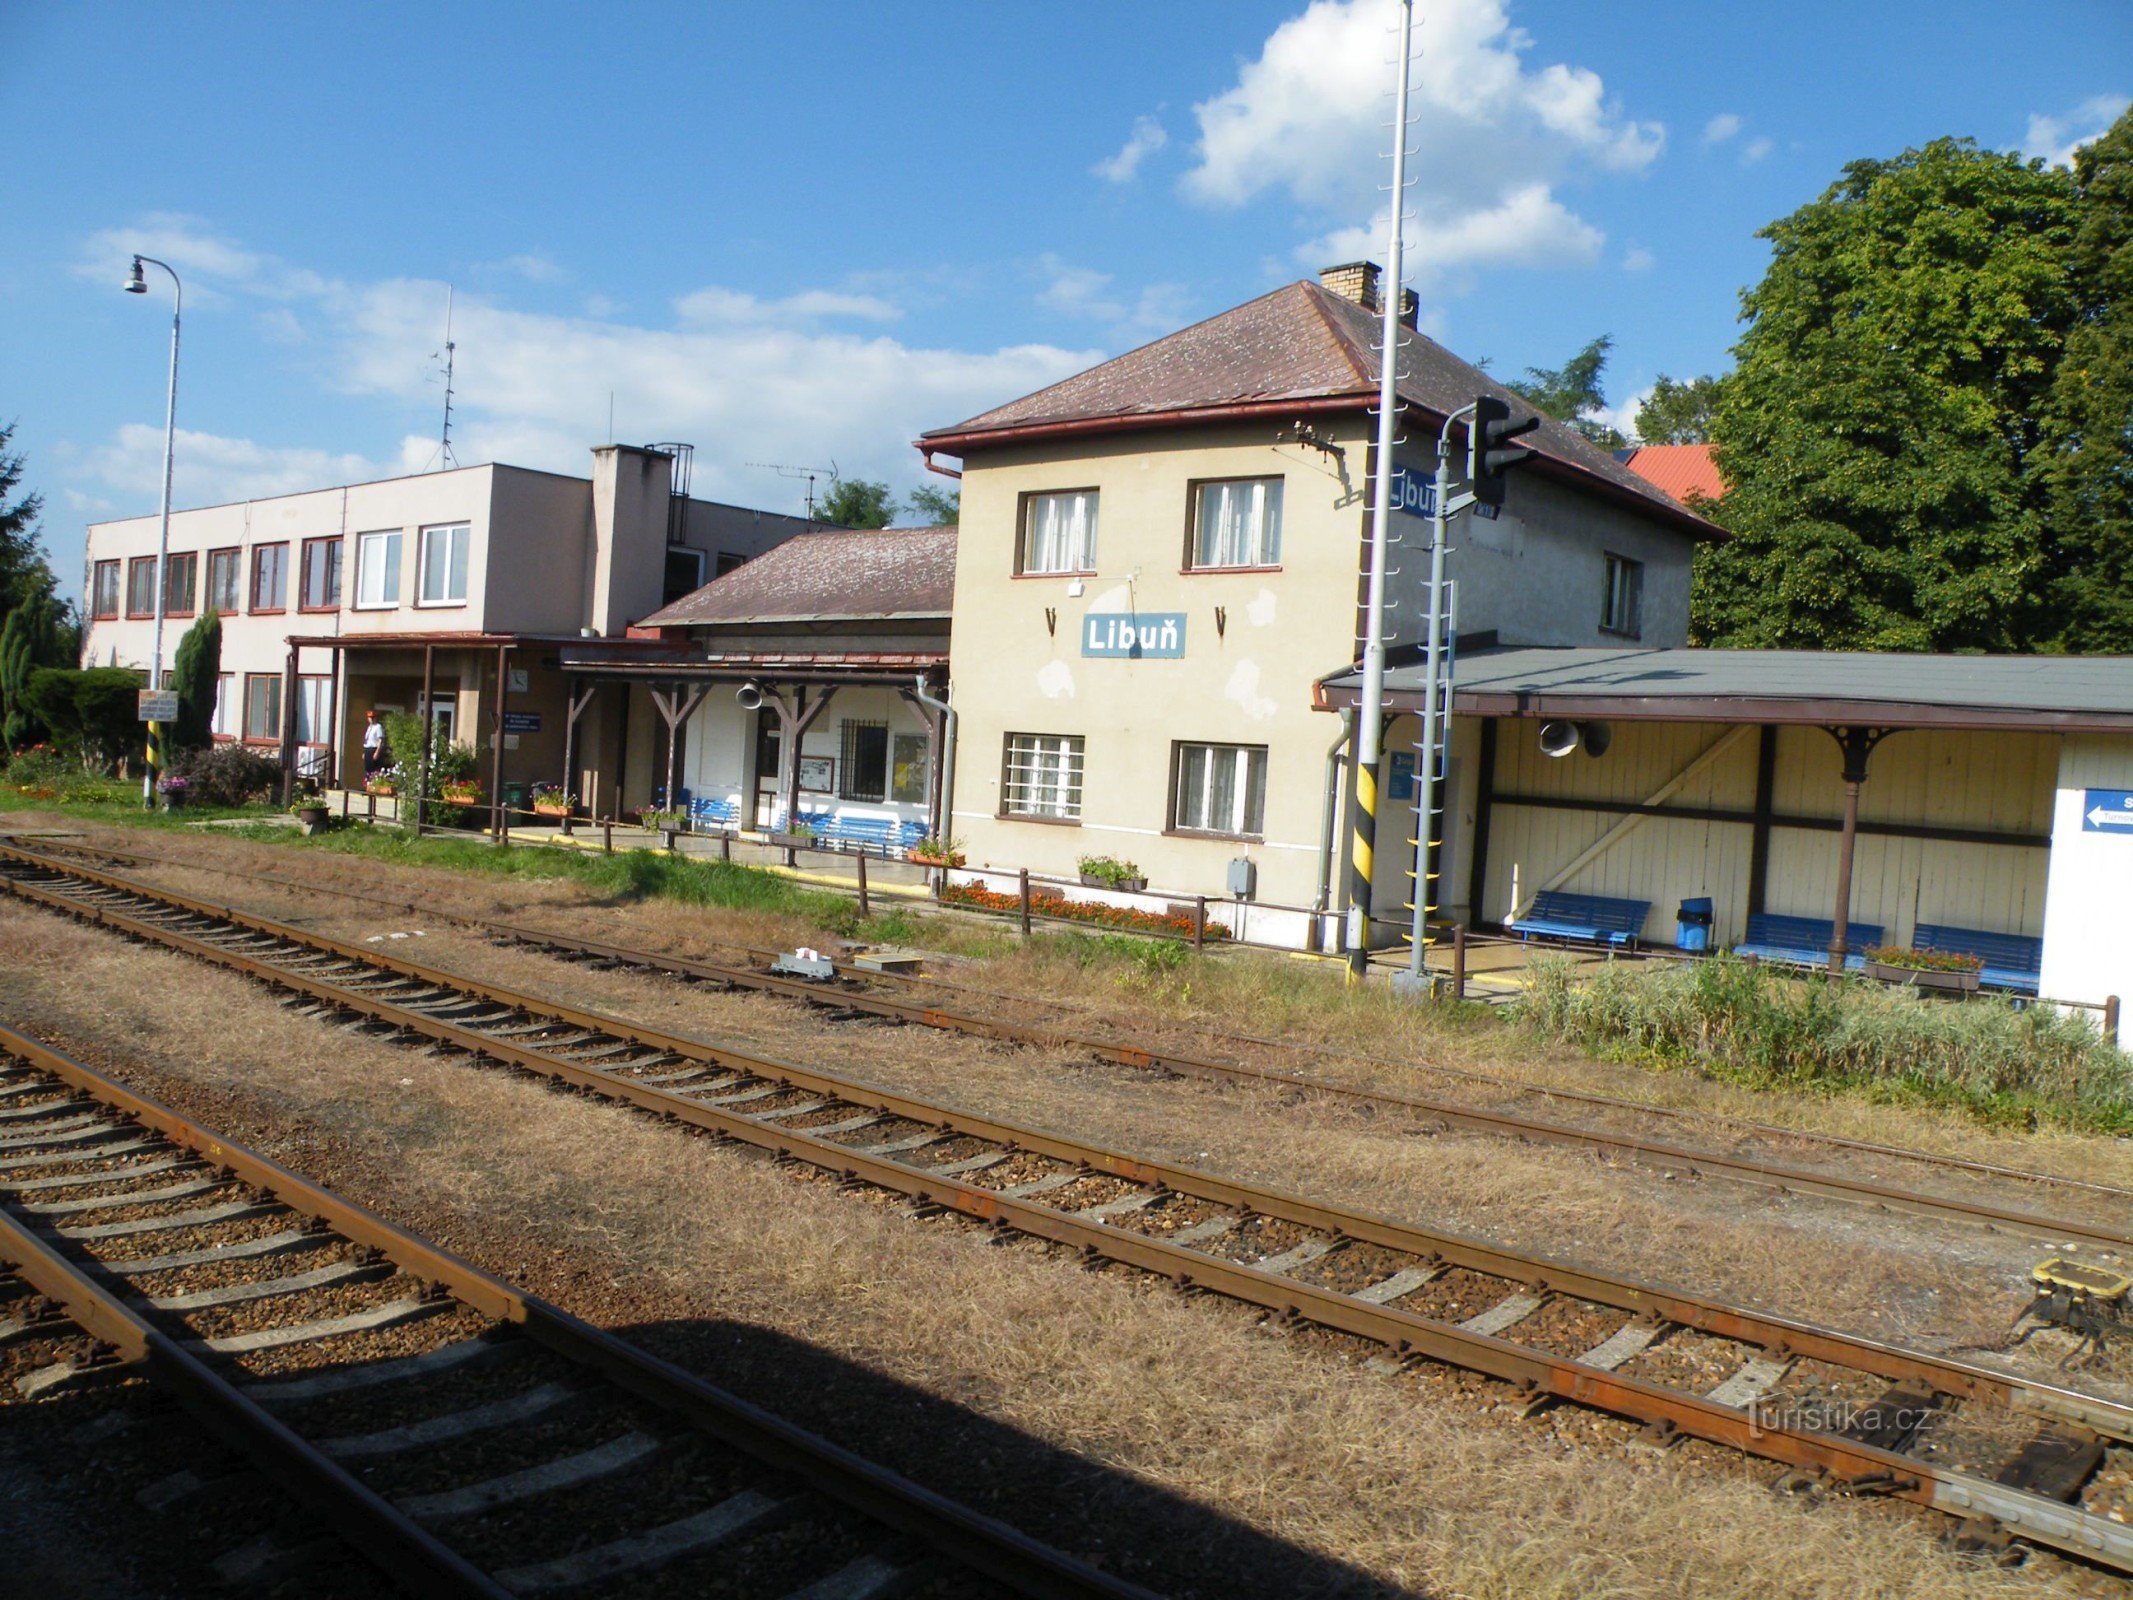 Libuň - estação ferroviária